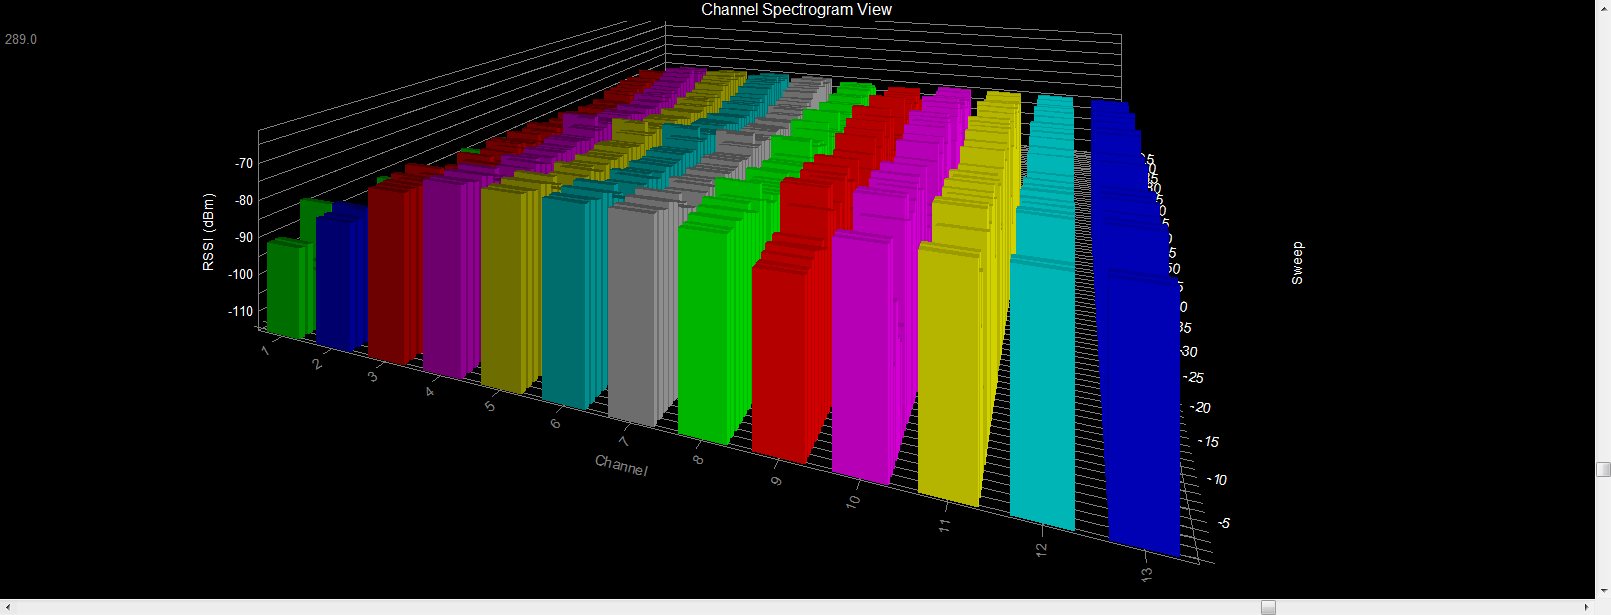 WiFi Surveyor -- Channel Spectrogram